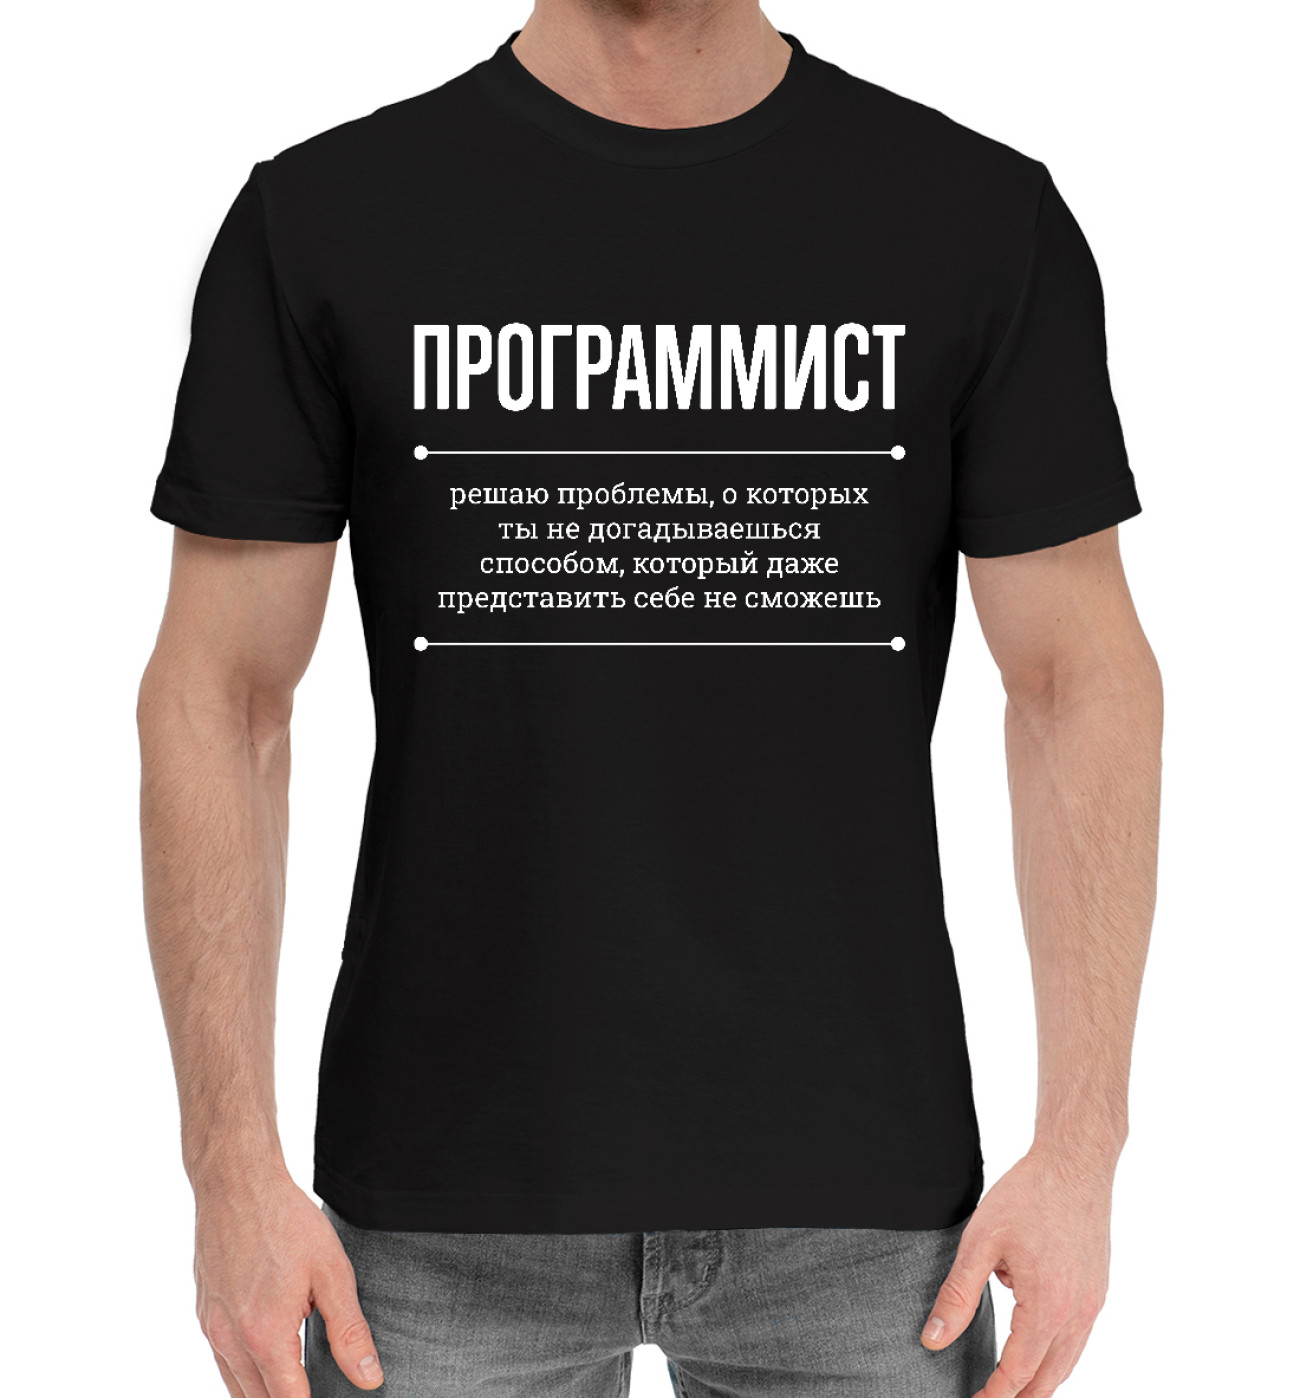 Мужская Хлопковая футболка Программист и Проблемы, артикул: ITT-543598-hfu-2